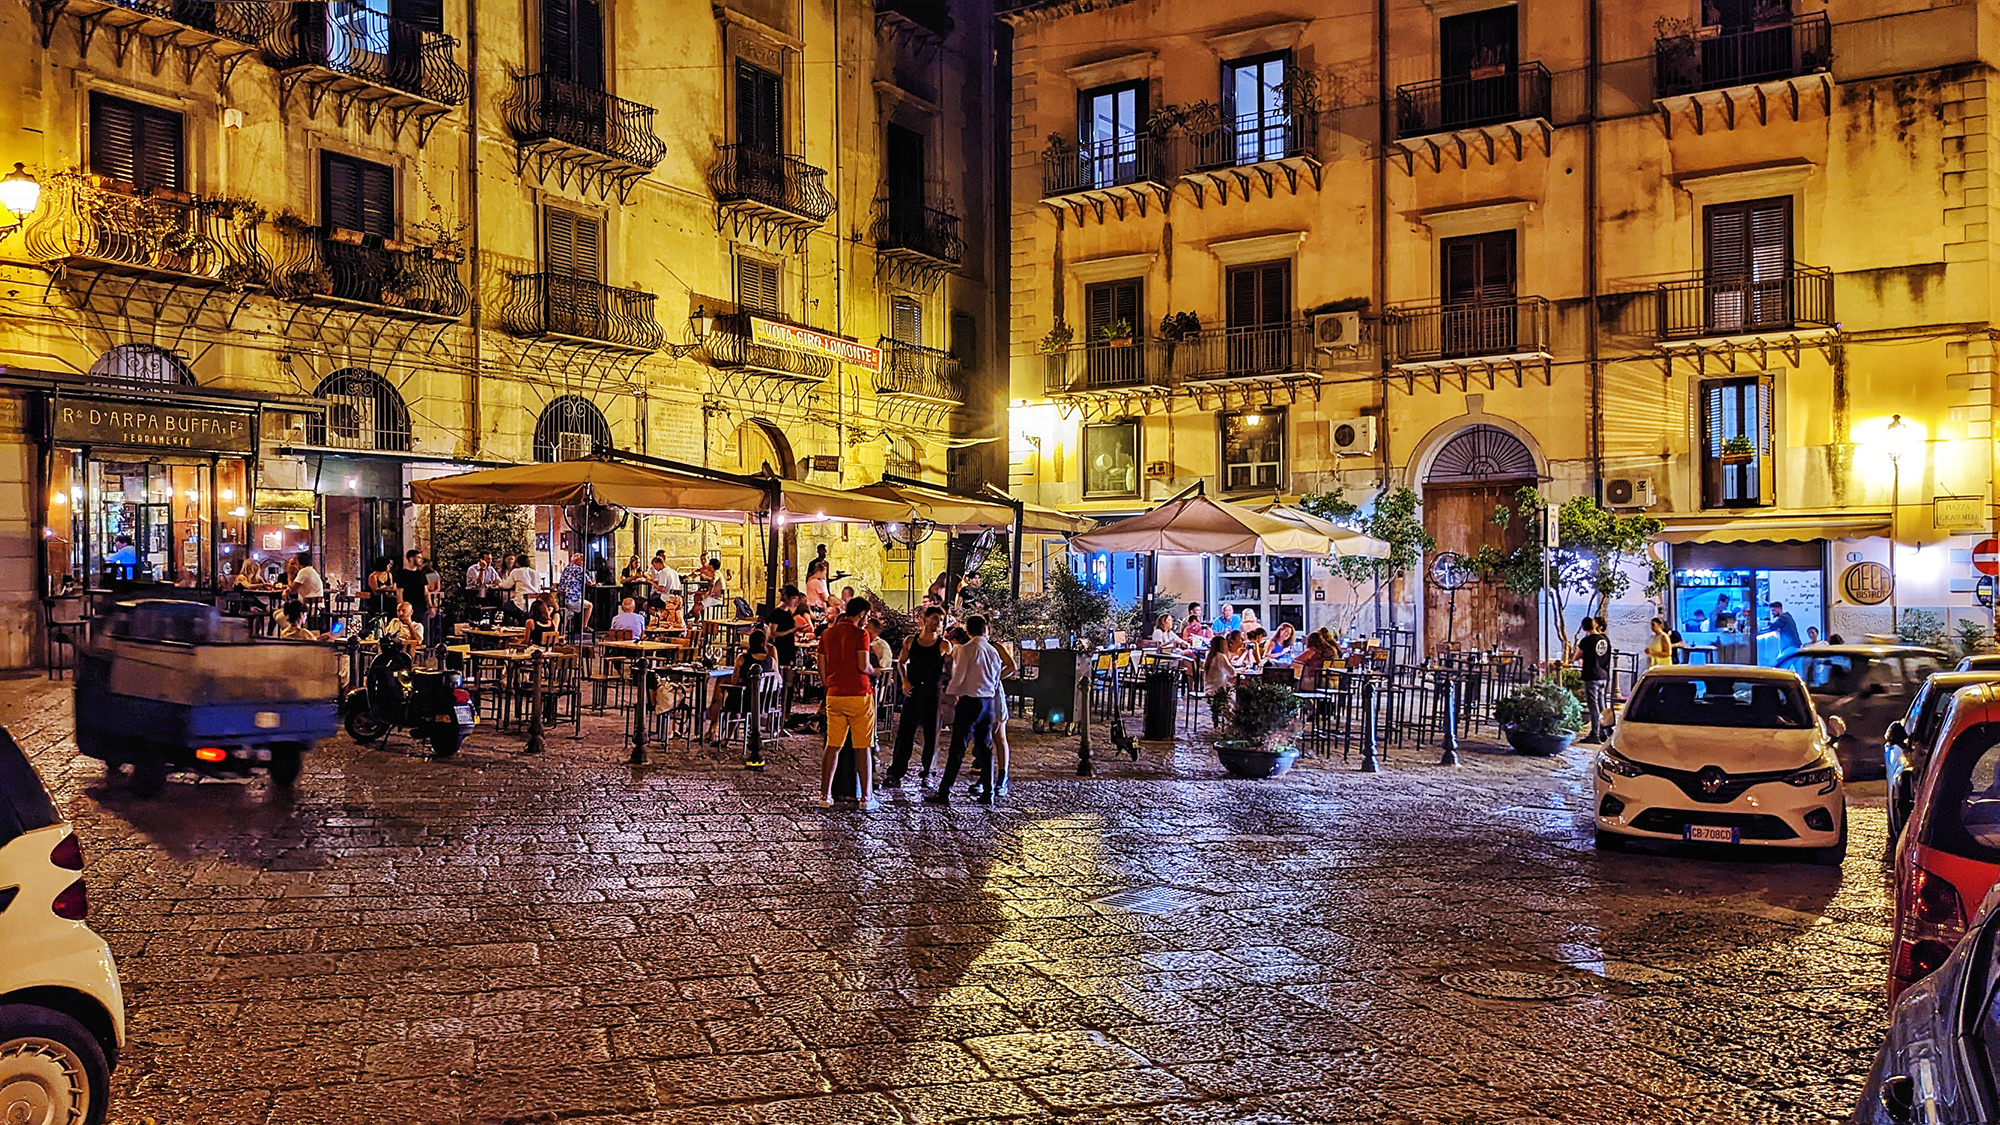 Piazza-Giovanni-Meli, Palermo.